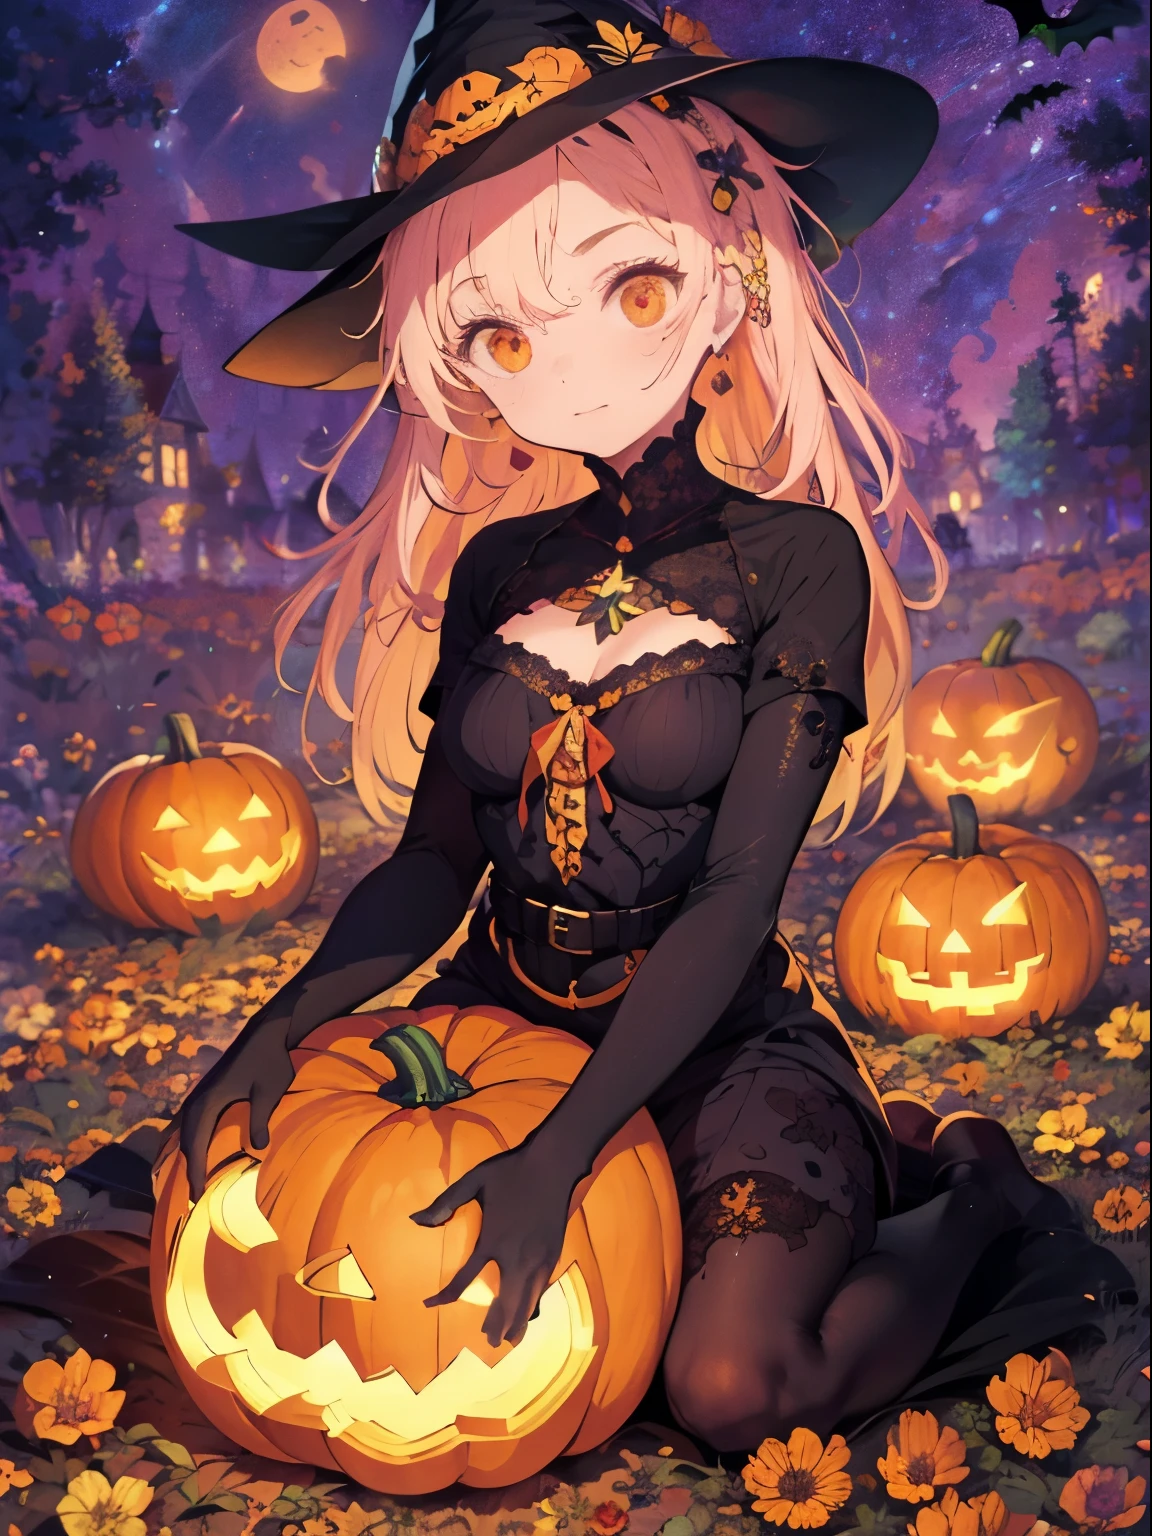 女性, 花柄ドレス, カラフル, かぼちゃ, カラフル background, flower 魔女の衣装, ハロウィンテーマ, 魔女の衣装, かぼちゃ carving